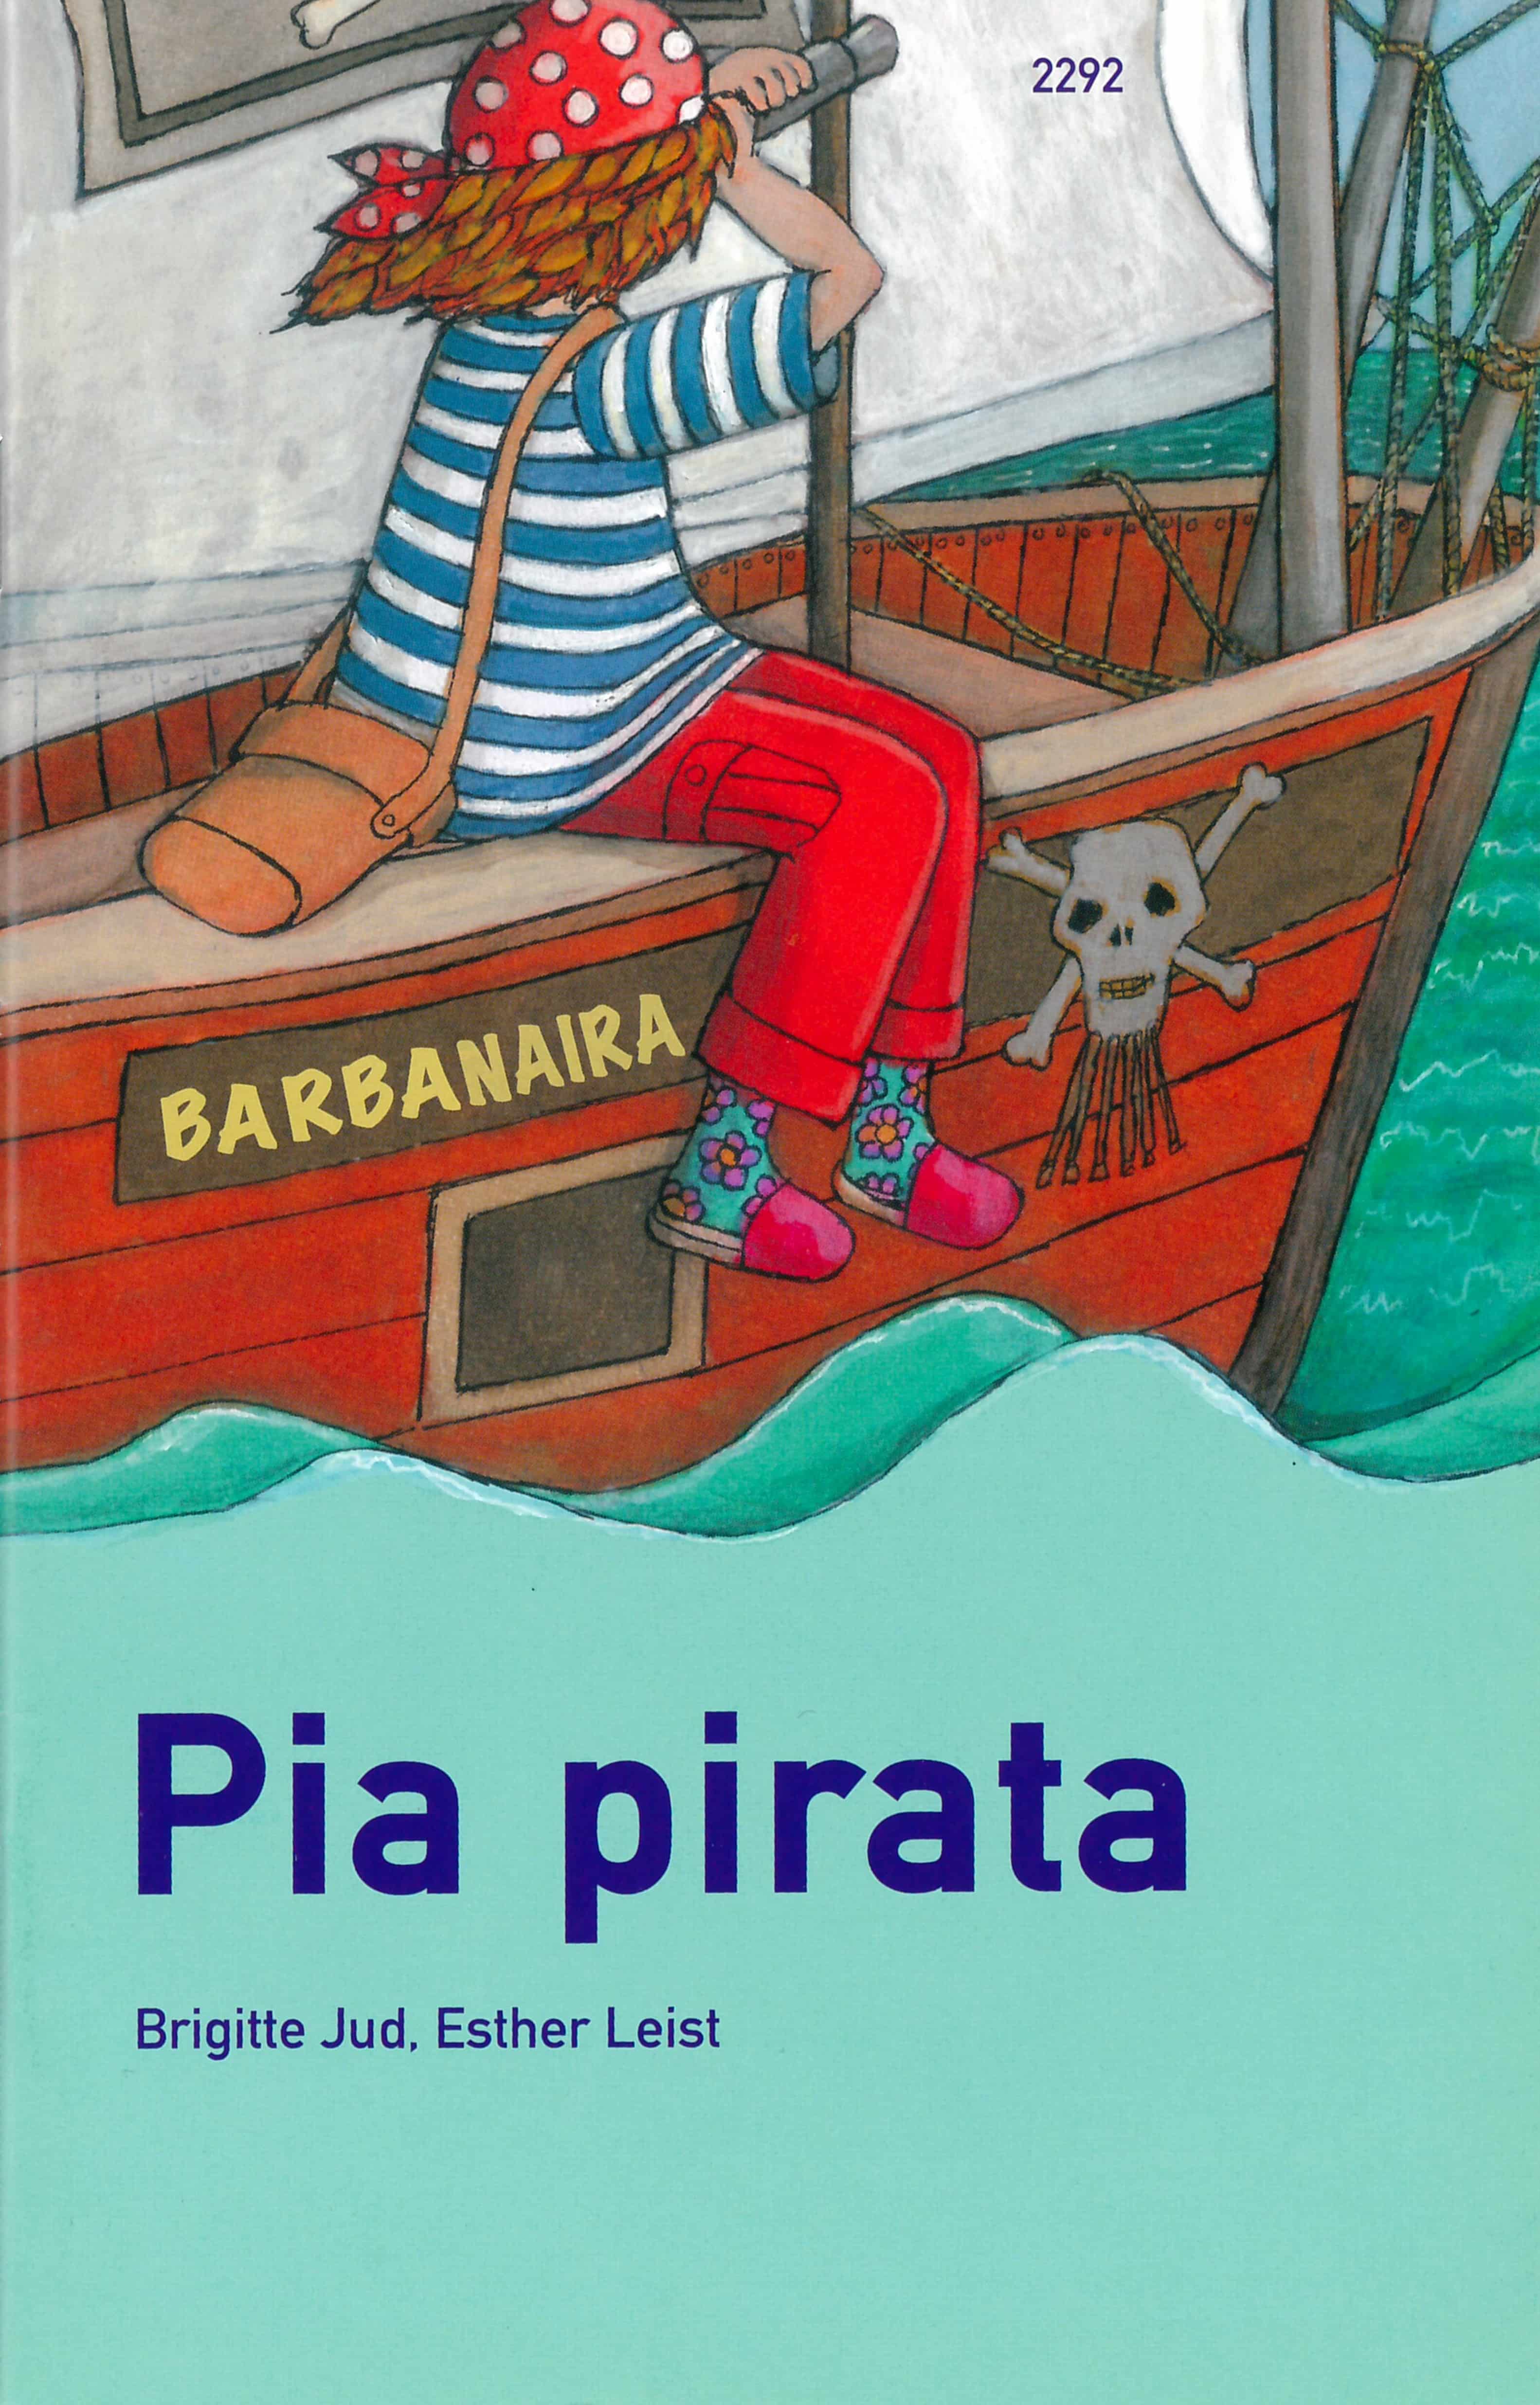 Pia pirata, ein Kinderbuch von Brigitte Jud, Illustration von Esther Leist, SJW Verlag, Piratengeschichte, Puter